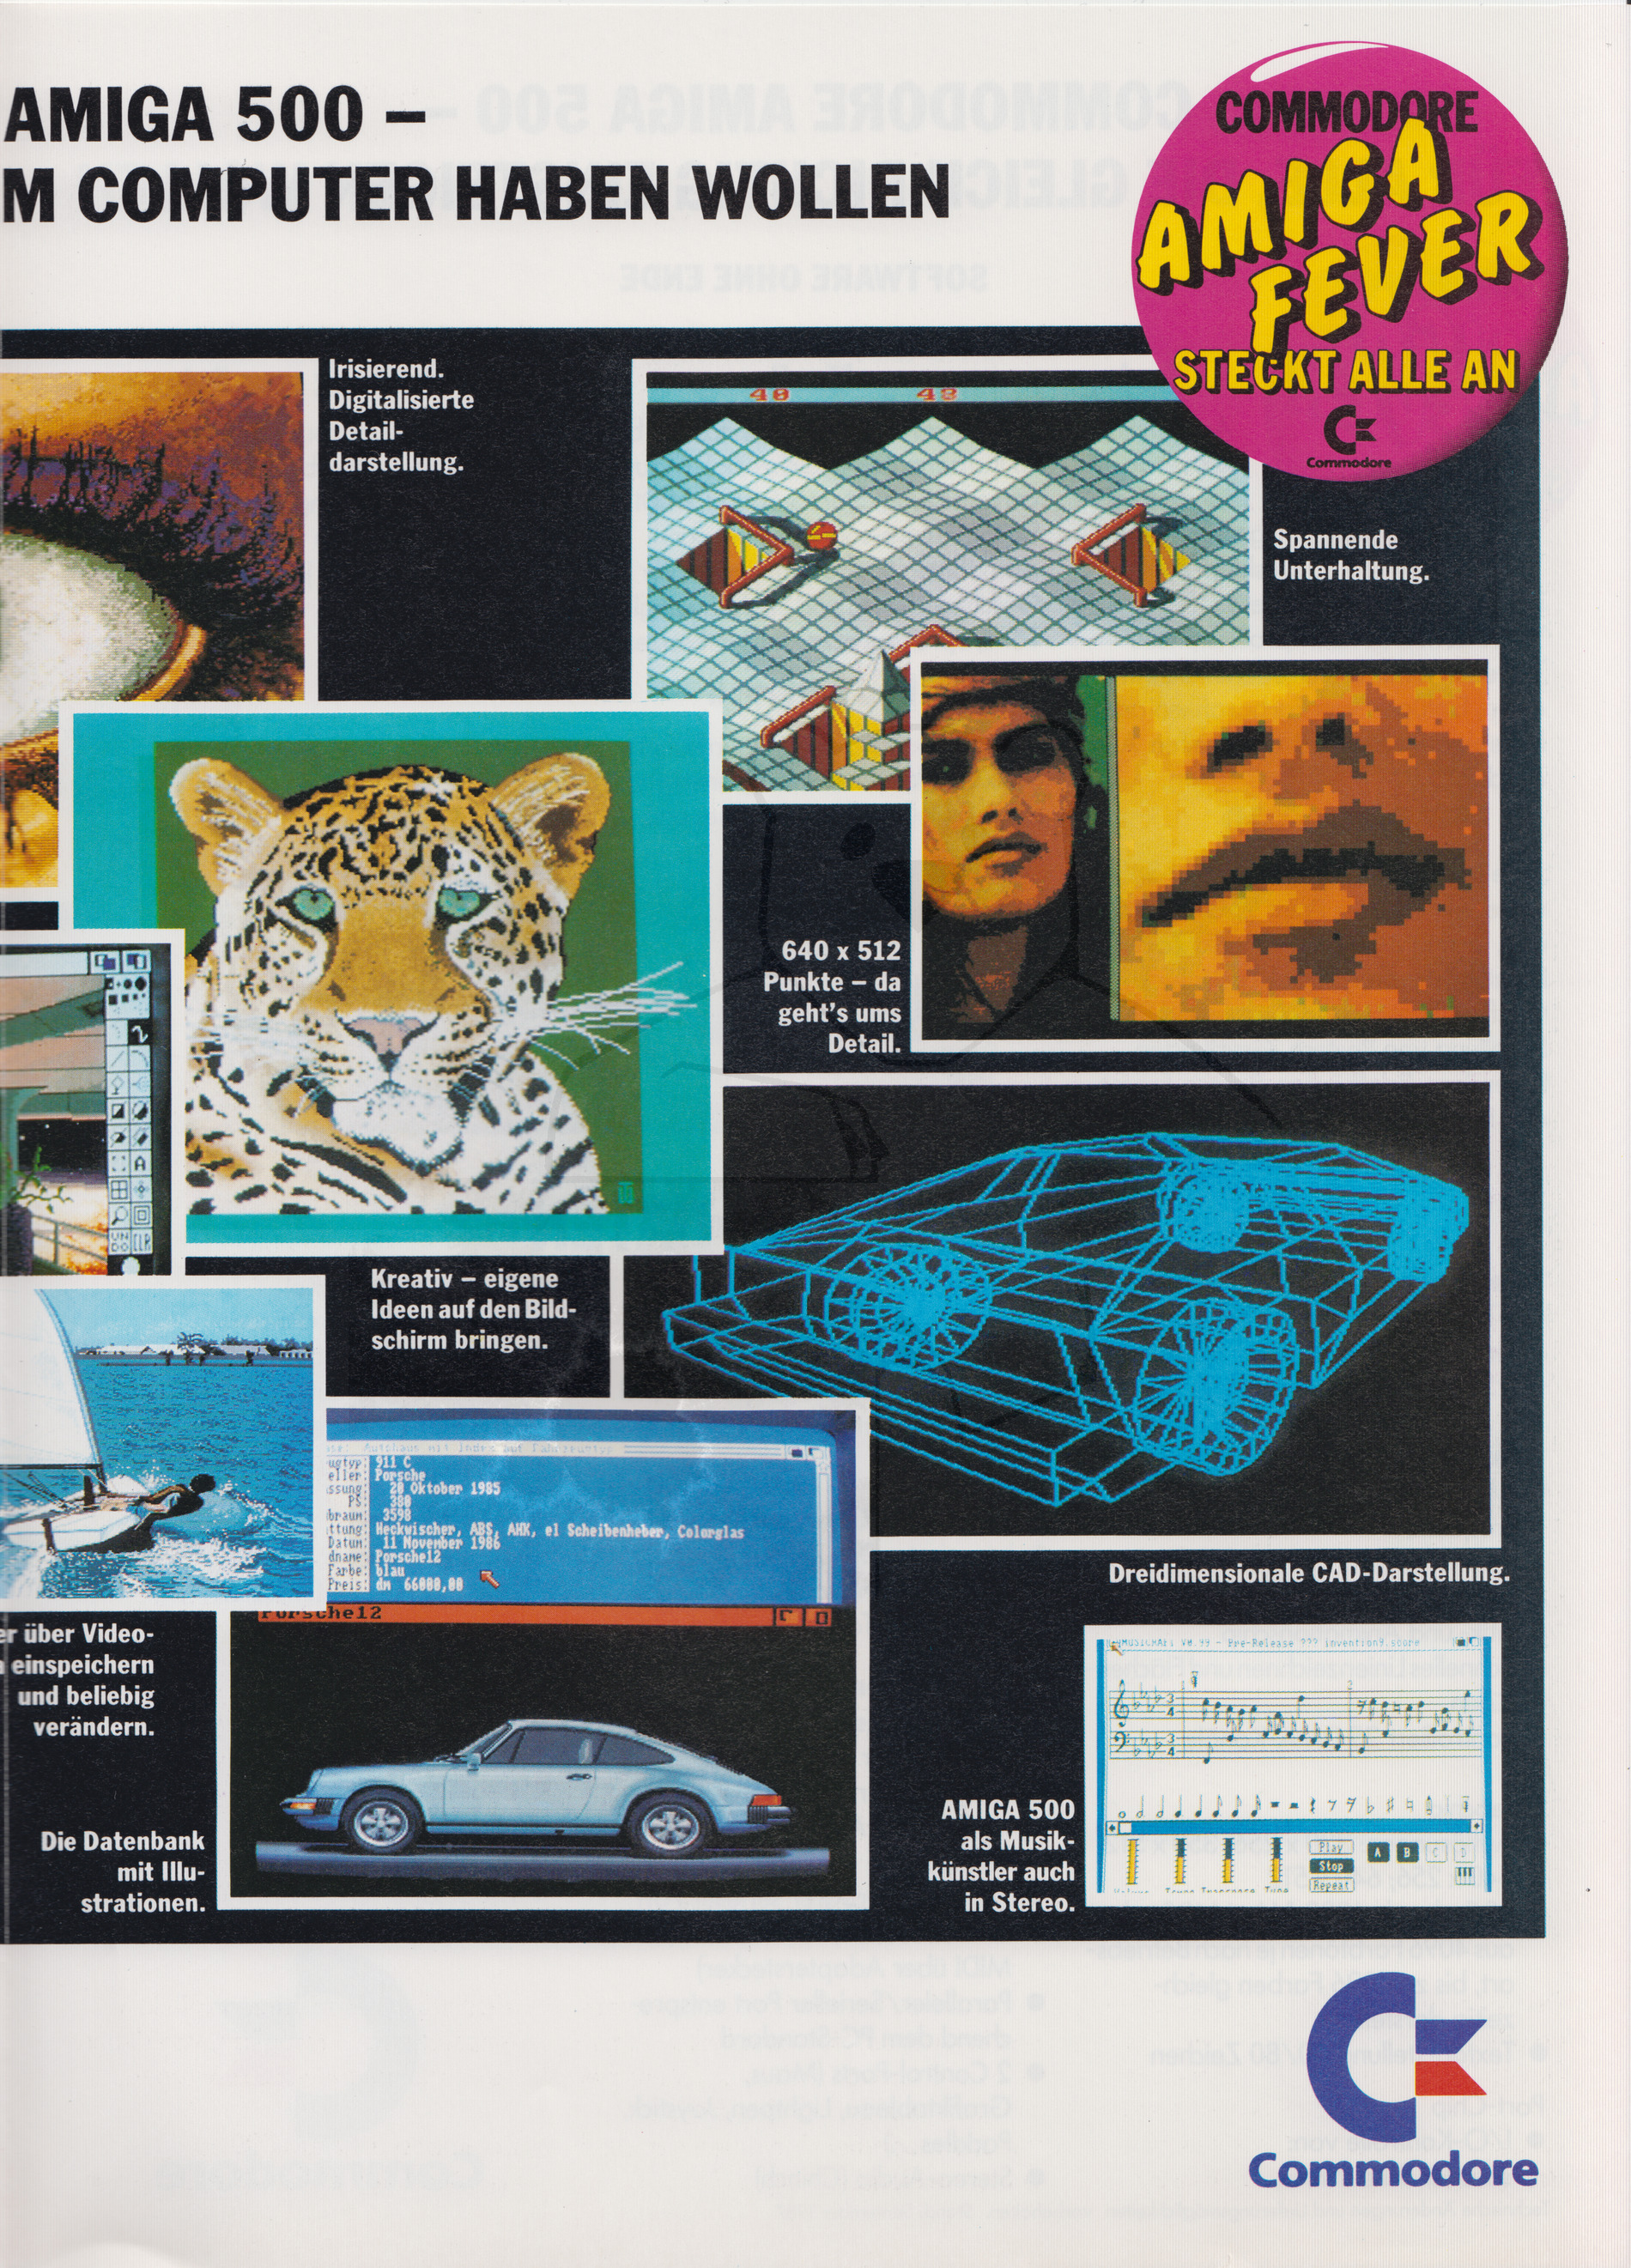 Commodore Werbeflyer "Commodore Amiga Fever", Seite 3